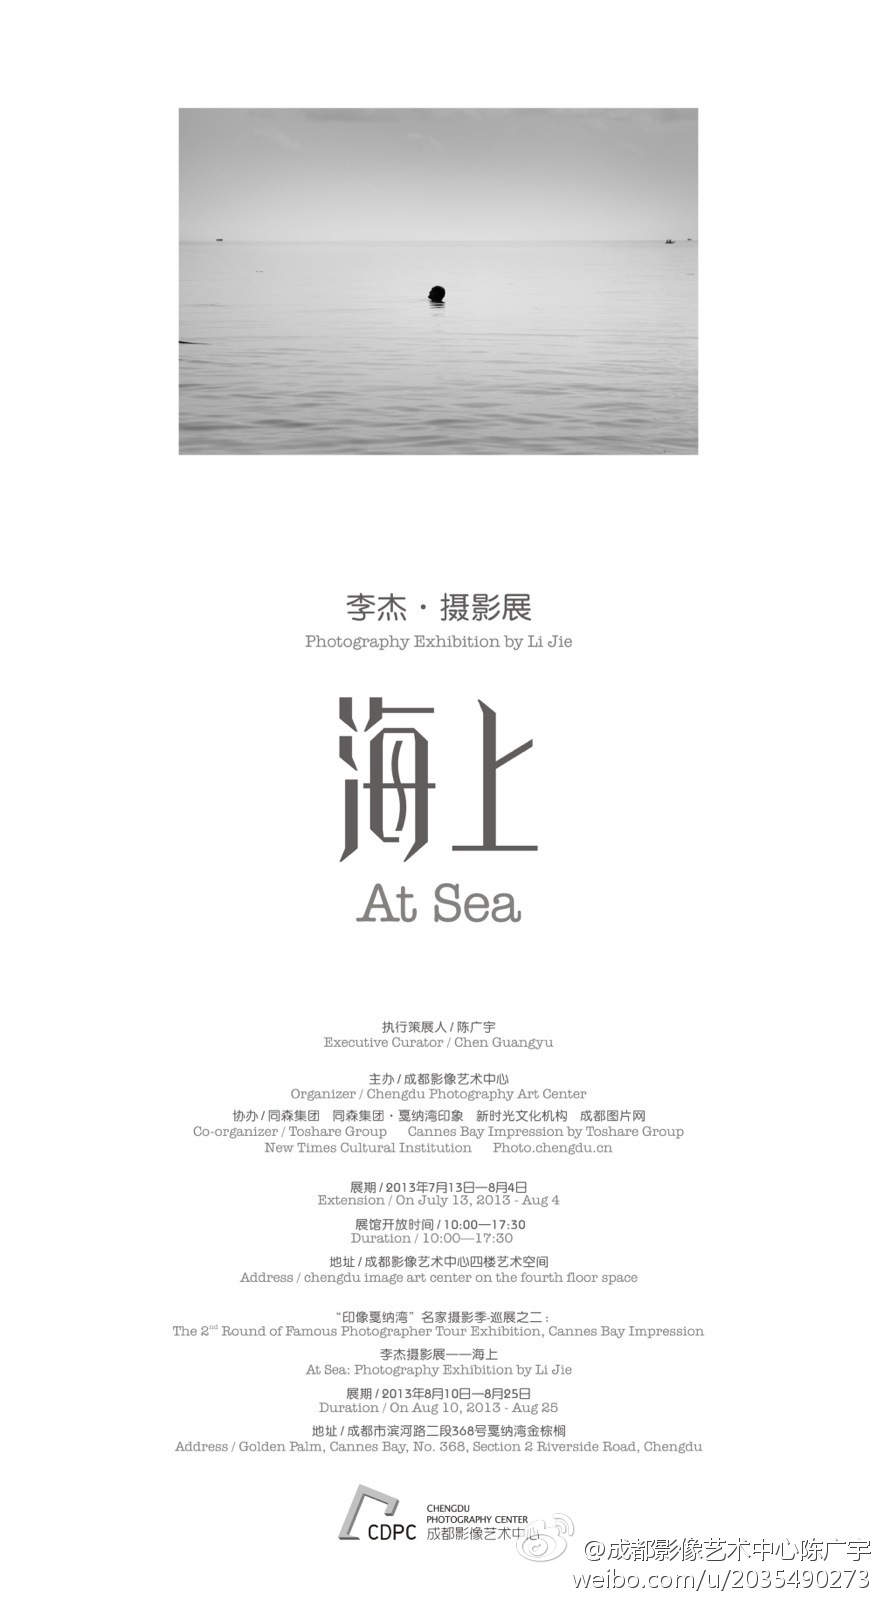 《海上》李杰摄影展暨画册首发13日成都开幕